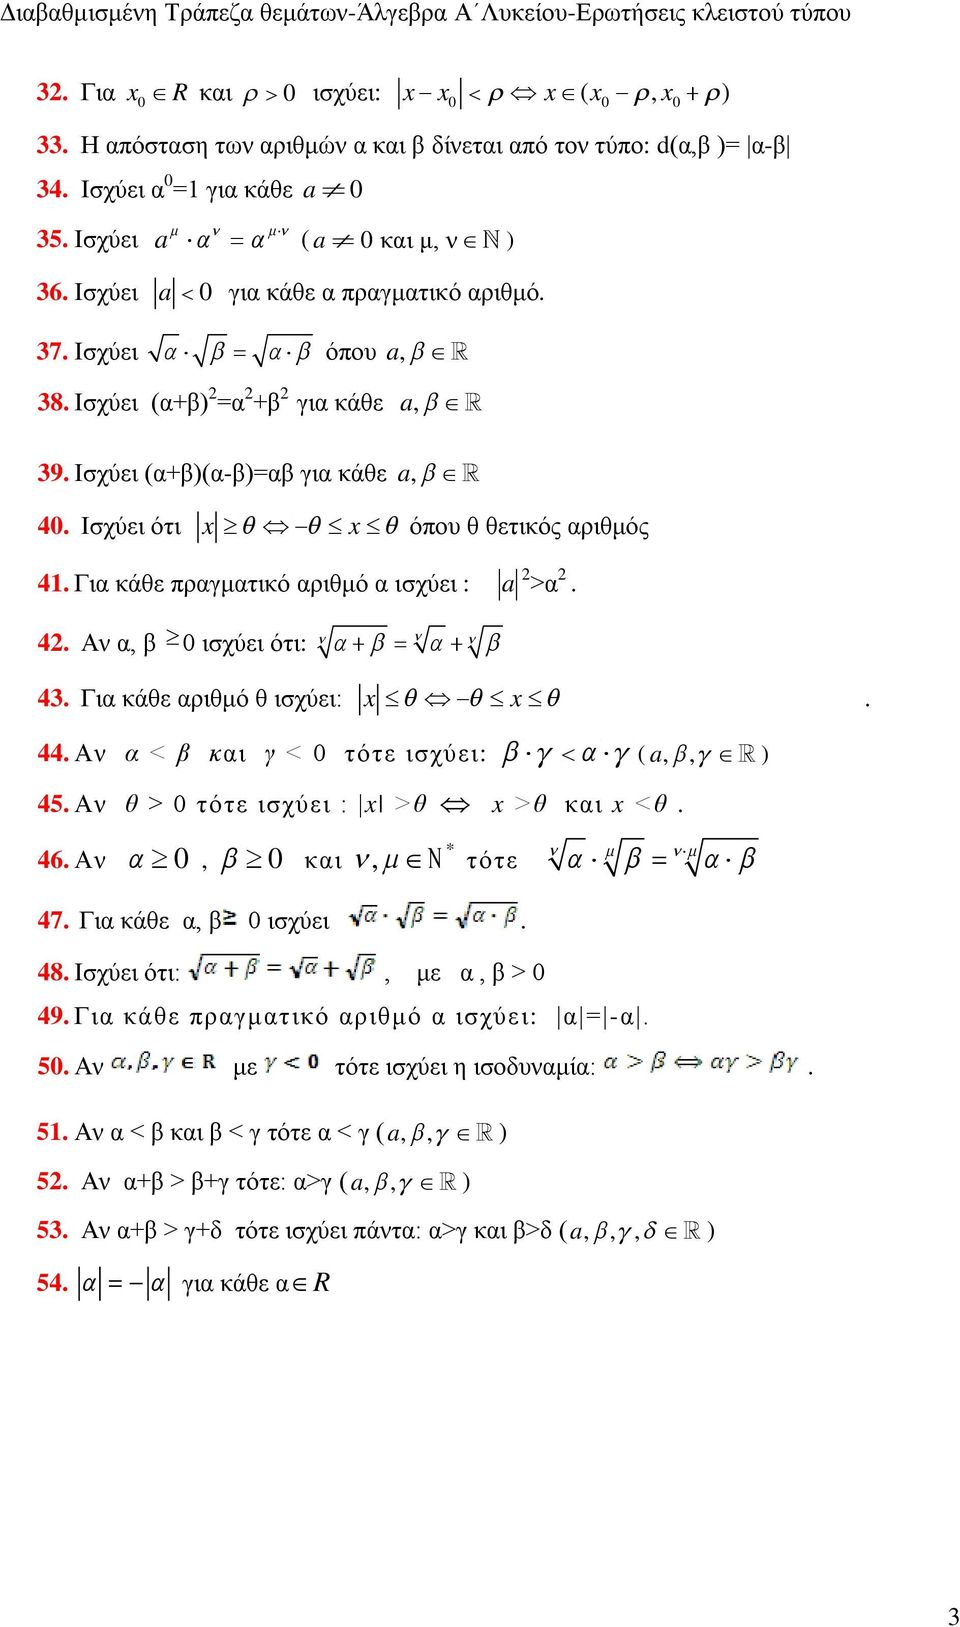 Για κάθε πραγματικό αριθμό α ισχύει : a >α. 4. Αν α, β 0 ισχύει ότι: 43. Για κάθε αριθμό θ ισχύει: x x. 44. Αν α < β και γ < 0 τότε ισχύει: ( a,, ) 45. Αν θ > 0 τότε ισχύει : x >θ x >θ και x <θ. 46.